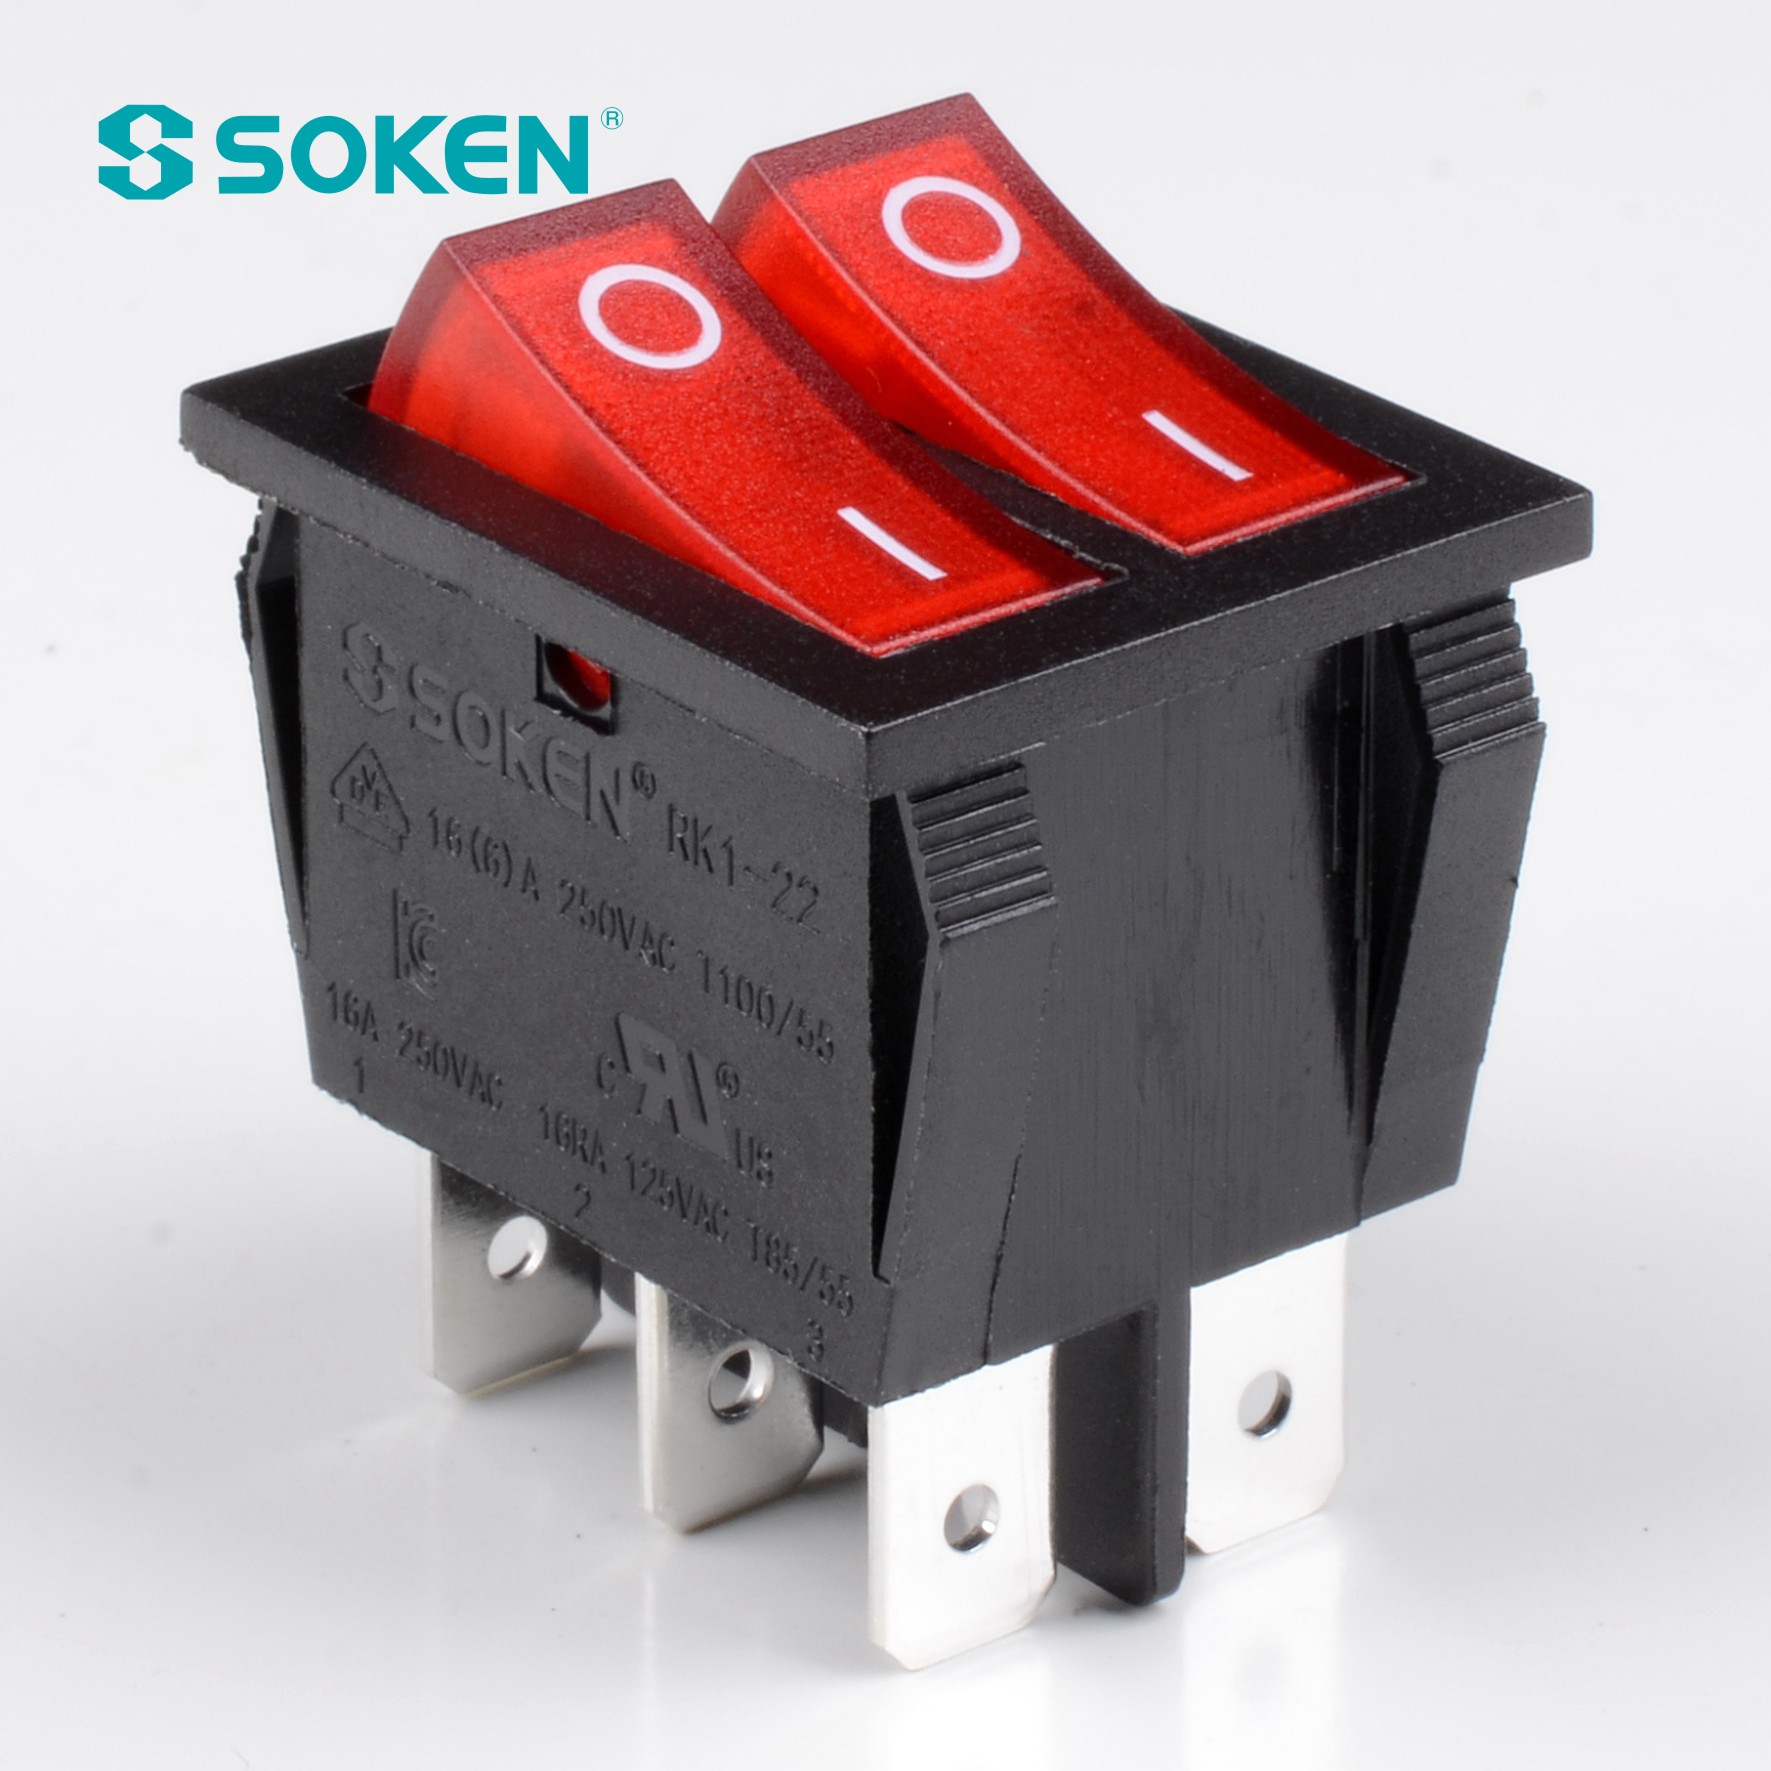 Soken Rk1-21 يعمل على إيقاف تشغيل المفتاح المزدوج المضيء